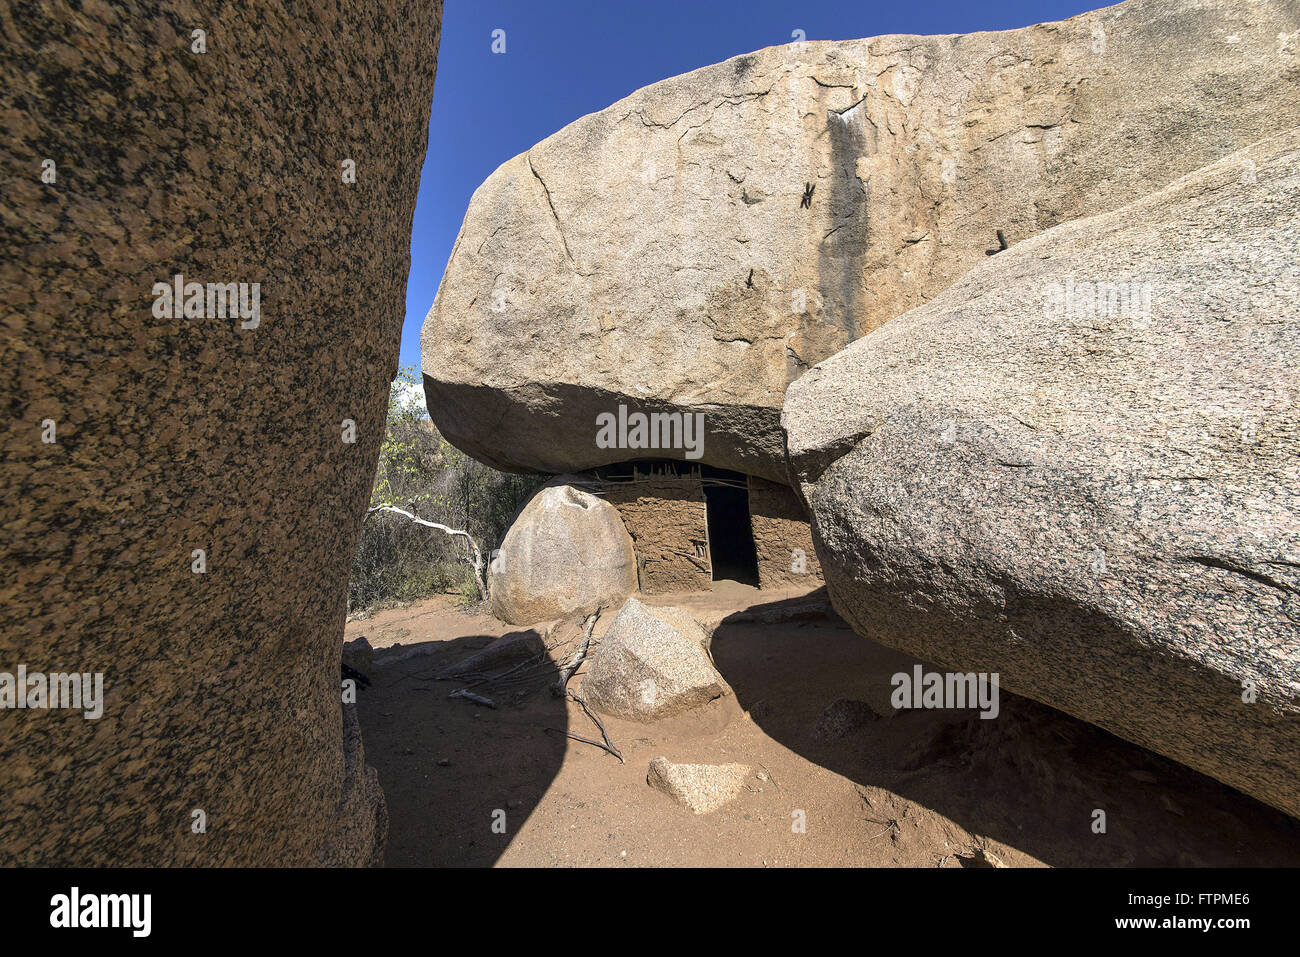 Loca de Zabe - como e conhecida una gruta de pau-a-pique construida sob uma grande rocha Foto Stock